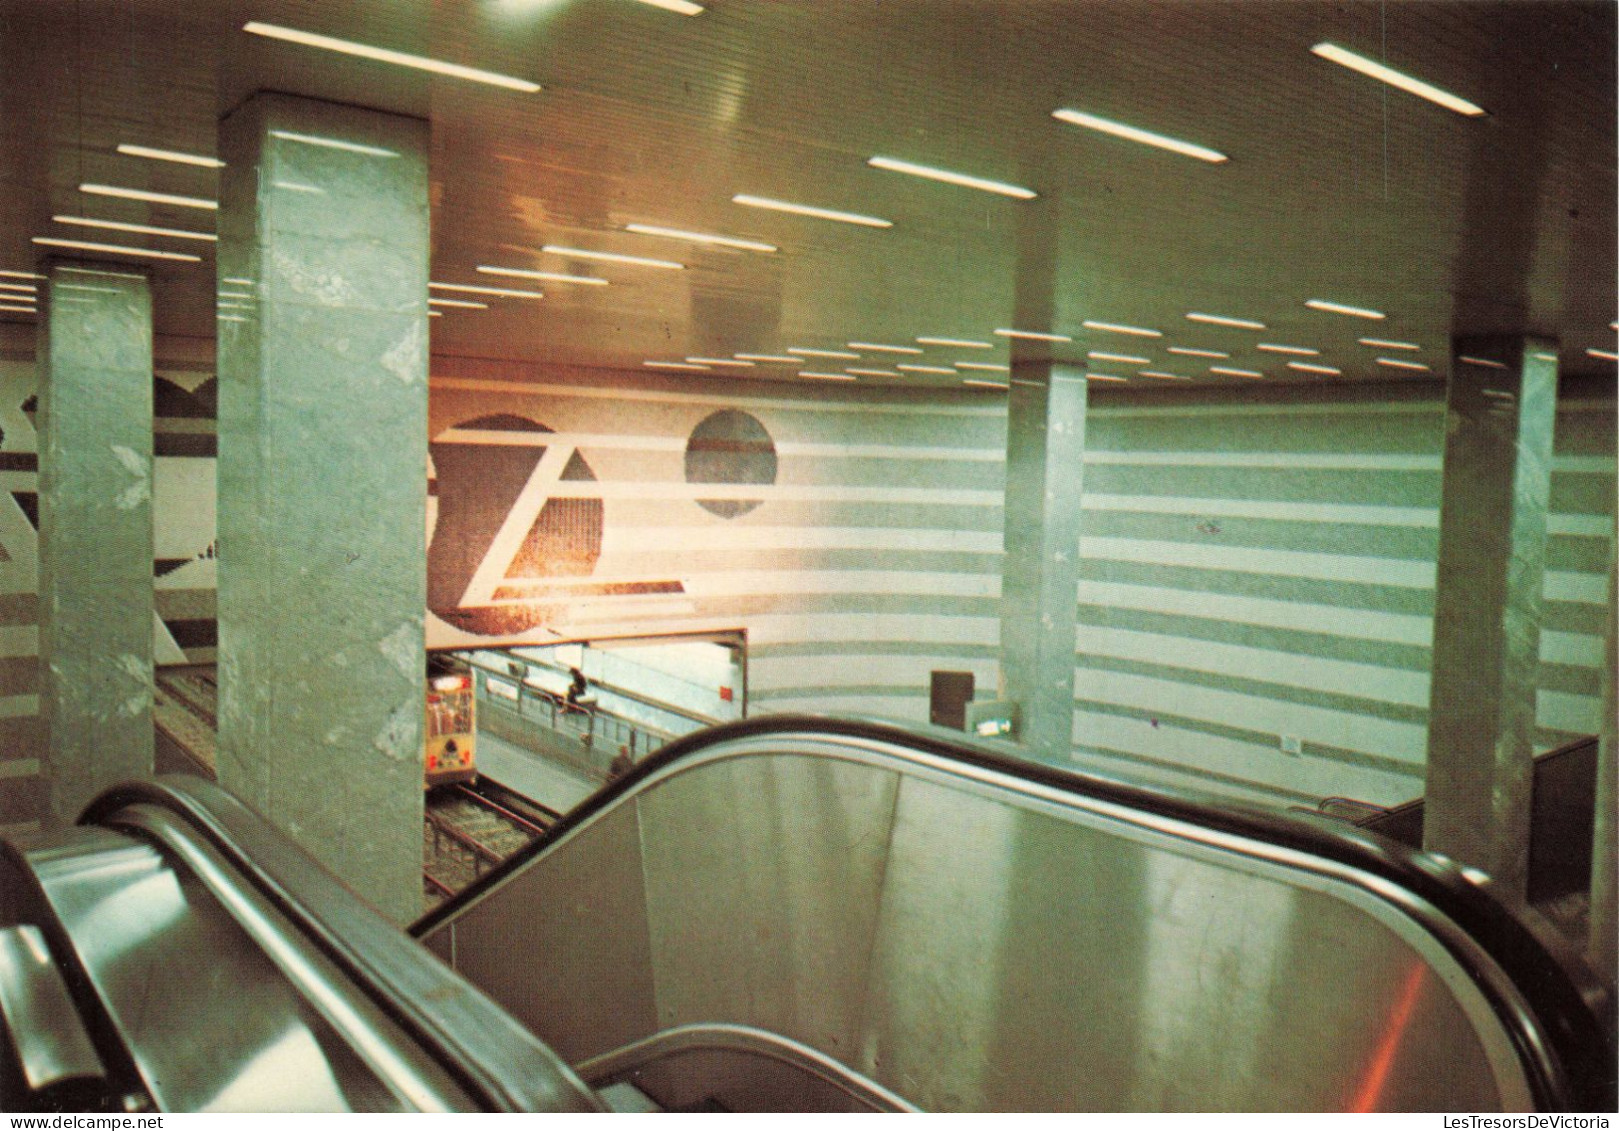 TRANSPORT - Intérieure De La Gare - Métro - Colorisé - Carte Postale - Subway